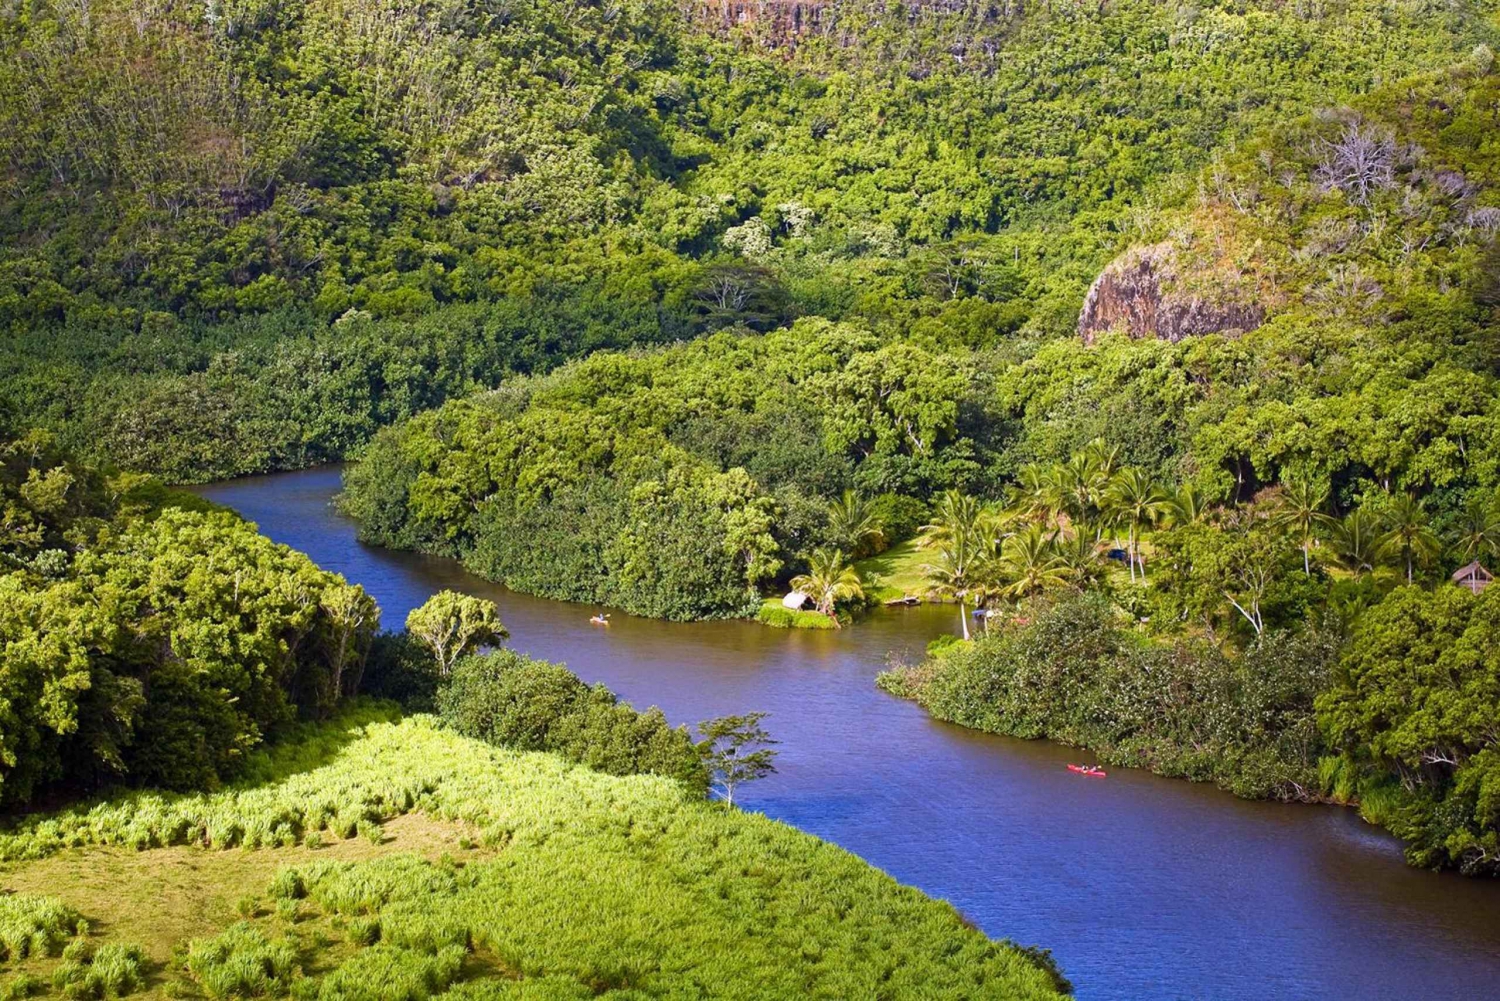 Von Oahu aus: Kauai Waimea Canyon & Wailua River Tour